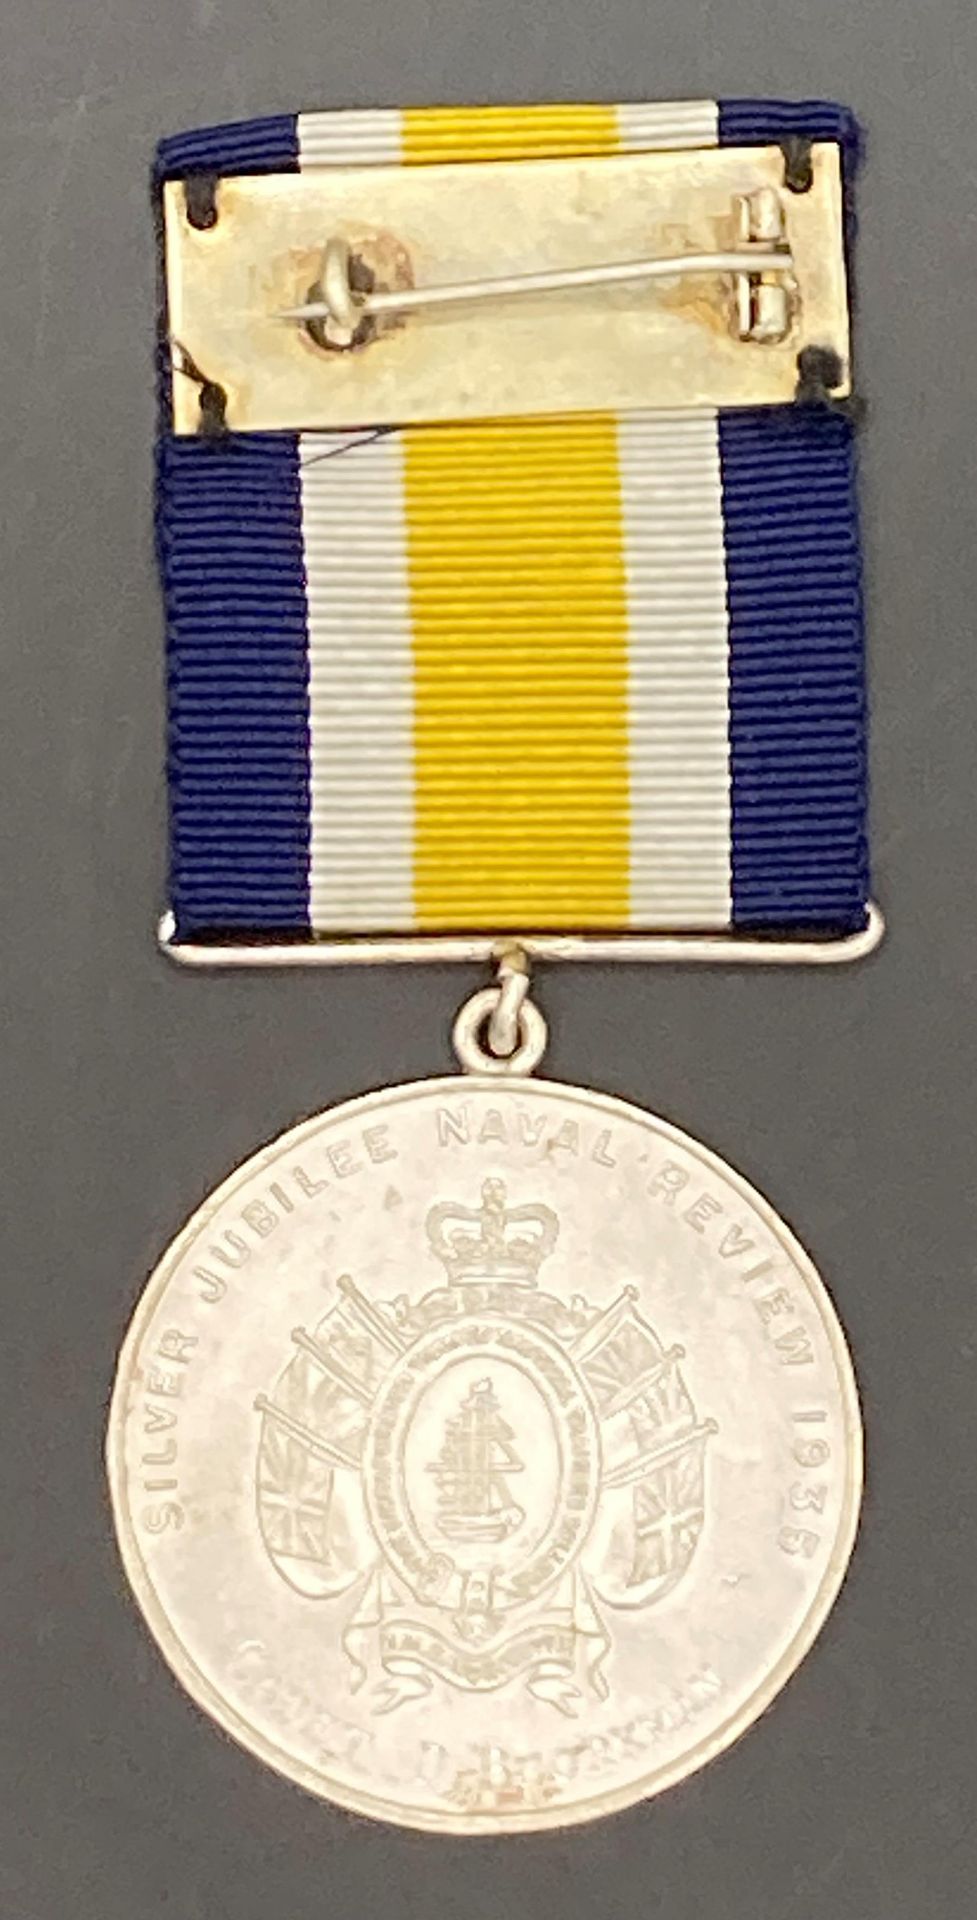 1935 Jubilee Medal. - Image 2 of 3